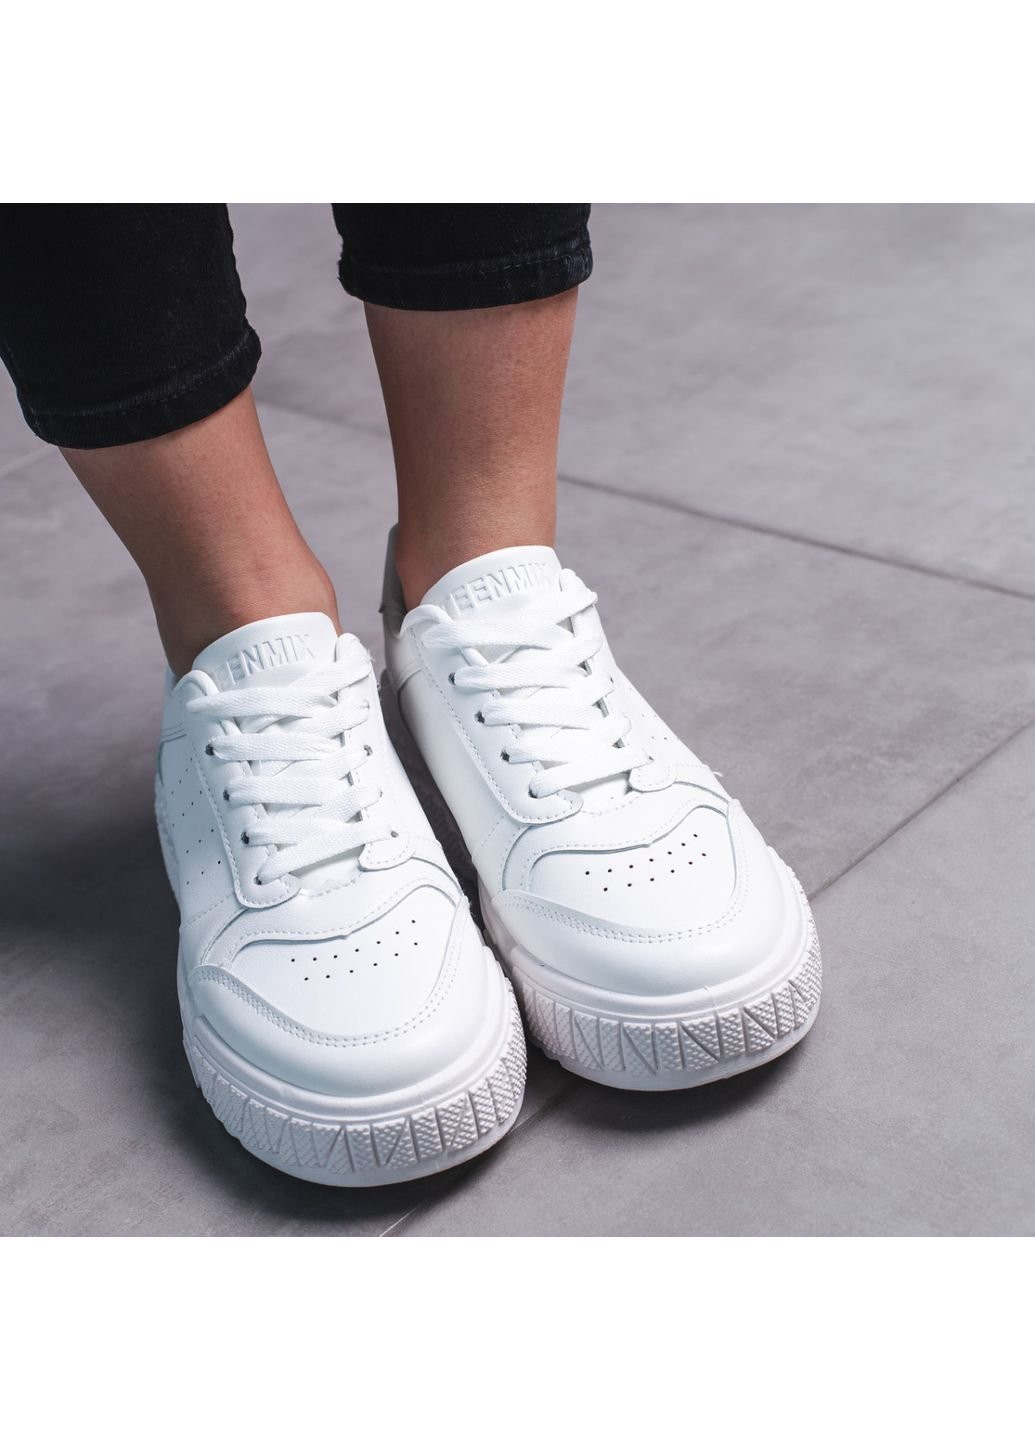 Белые демисезонные кроссовки женские reign 3505 40 25 см белый Fashion